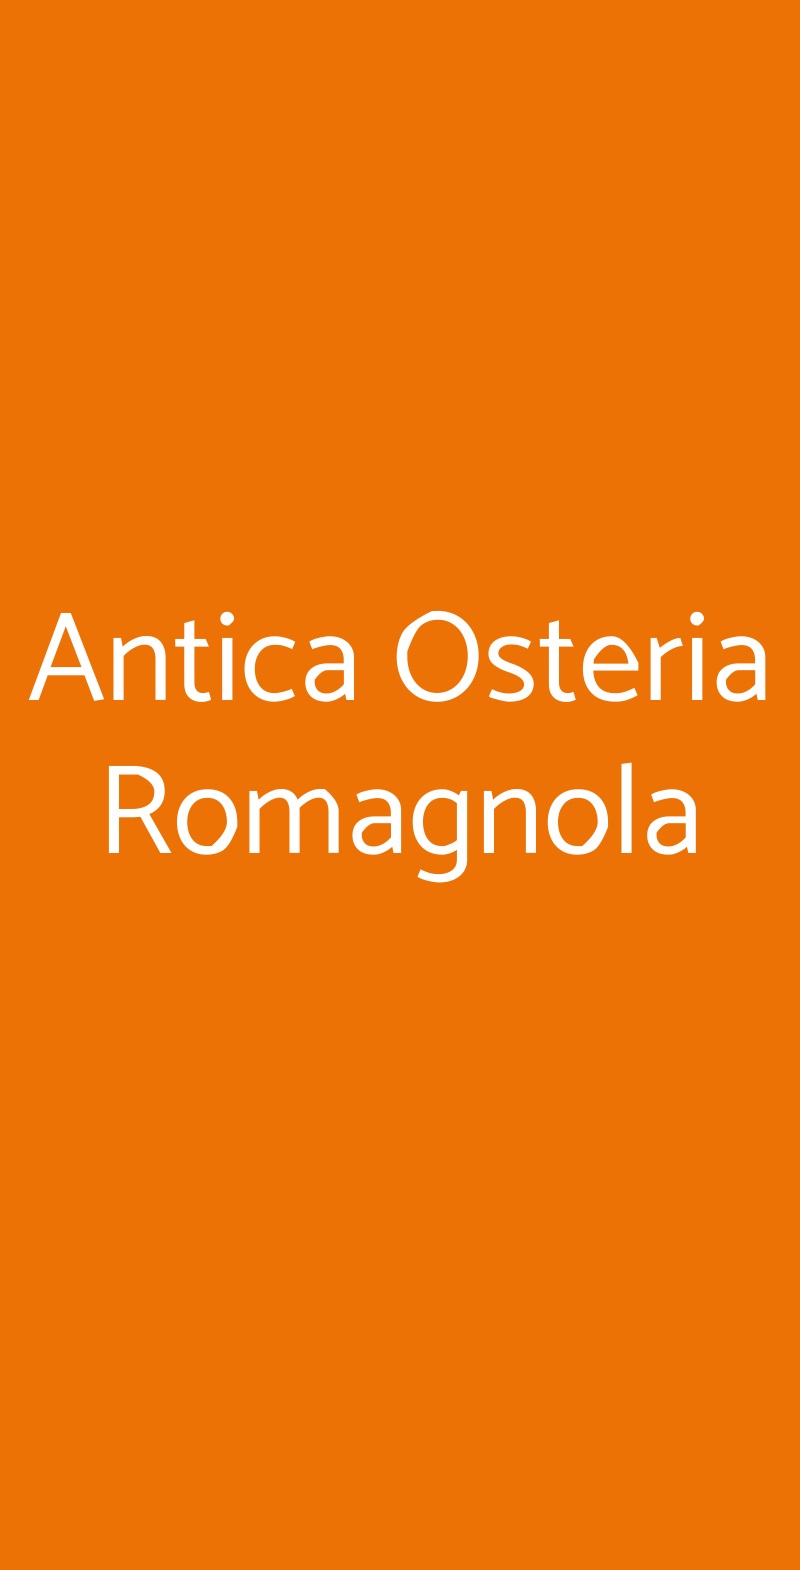 Antica Osteria Romagnola Bologna menù 1 pagina